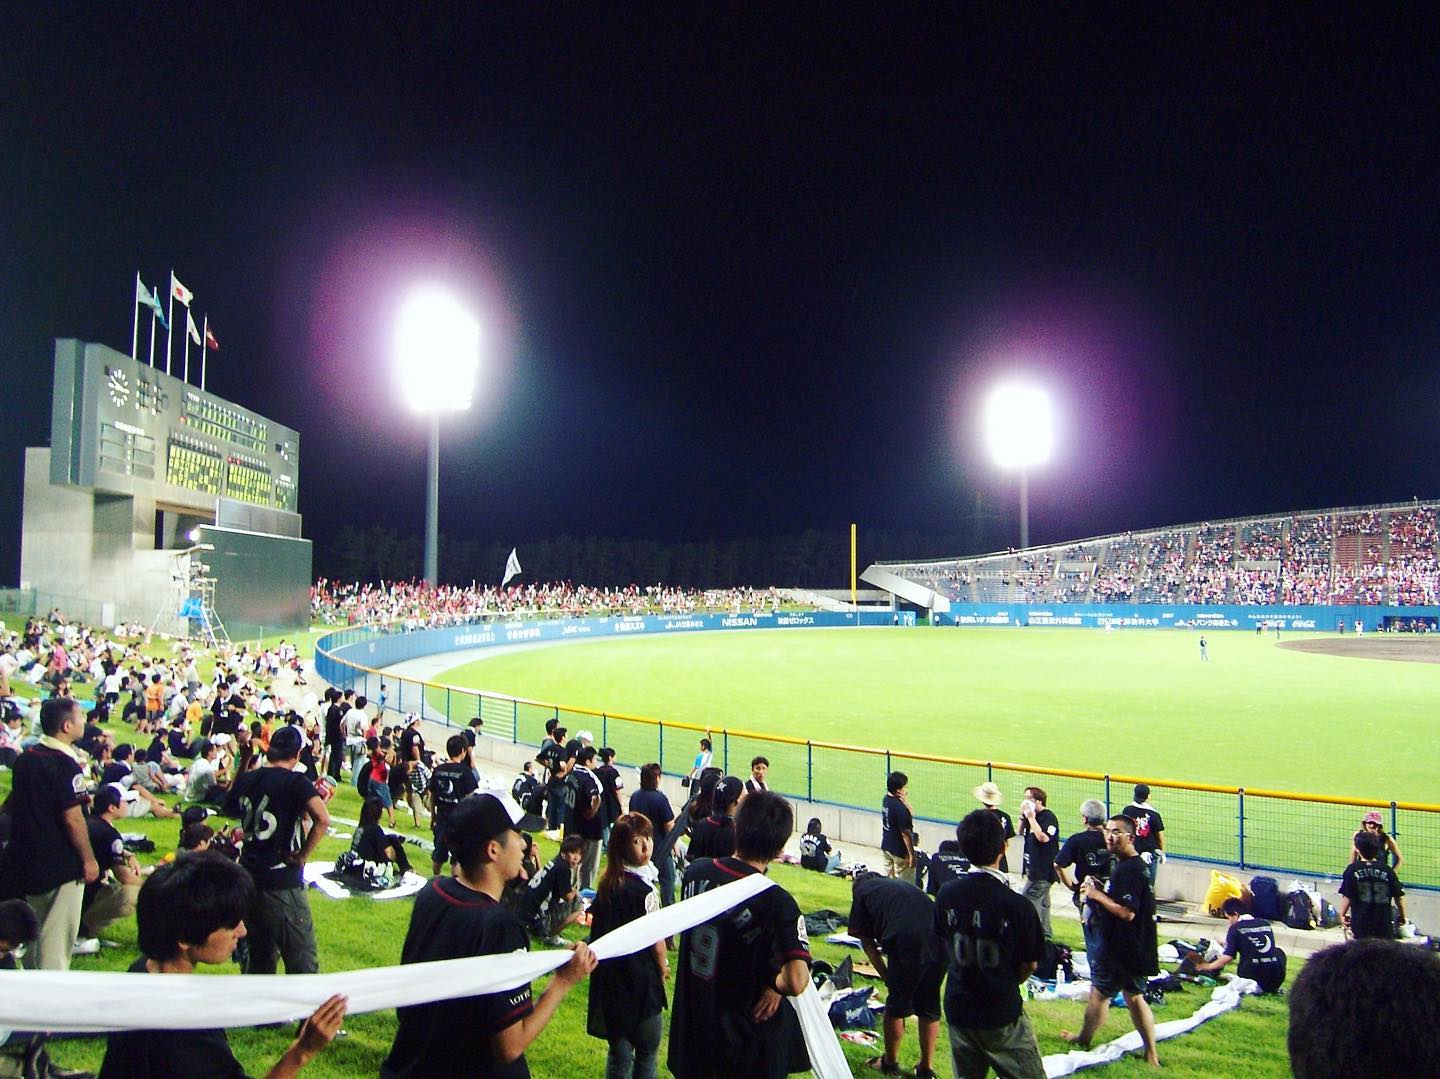 2006.08.09 秋田県立野球場夏の地方ゲームはよい　#chibalotte